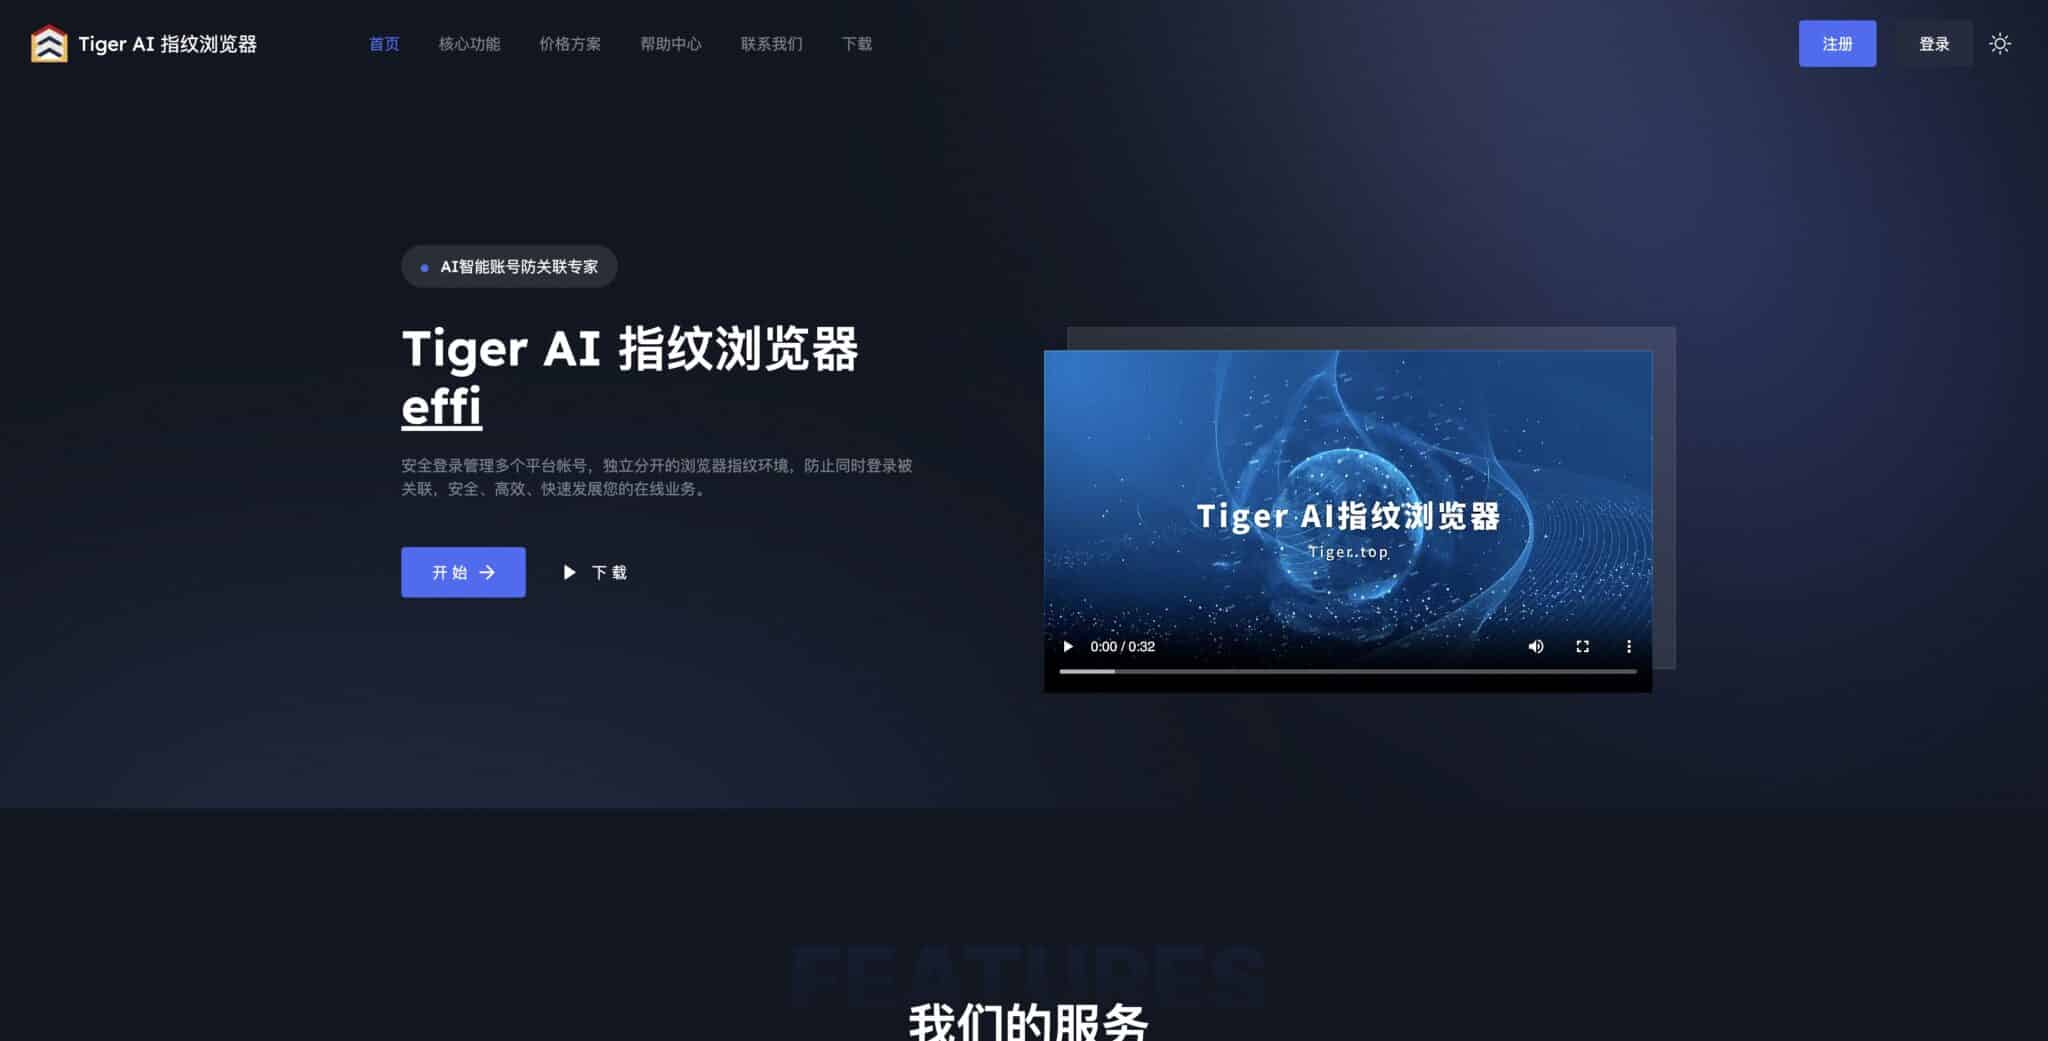 TigerAI 브라우저: 고급 사용자를 위한 차세대 웹 브라우저